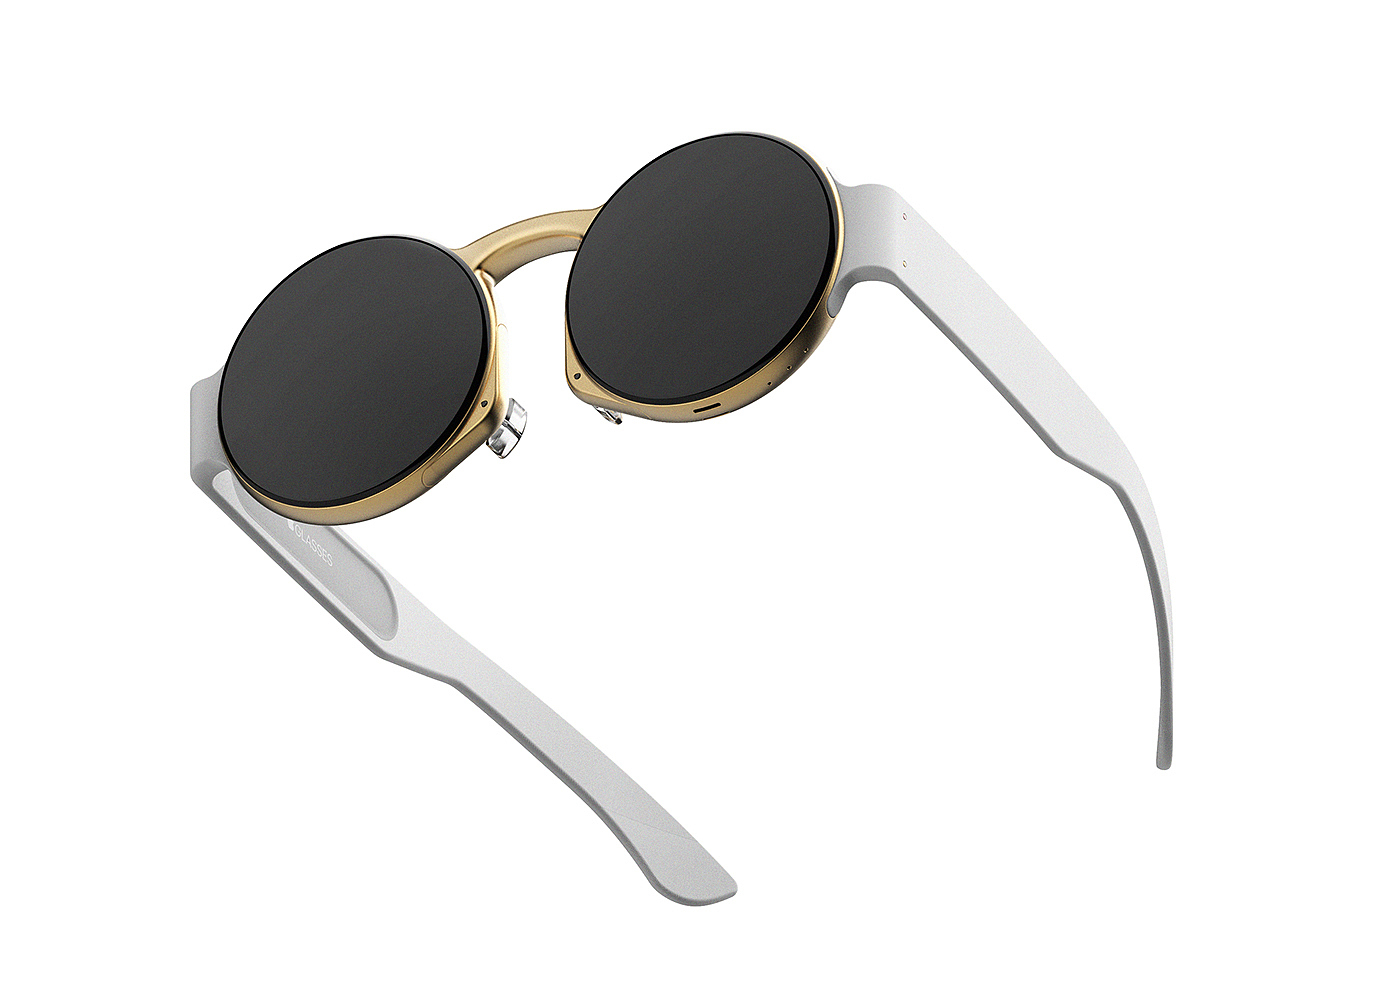 Las gafas inteligentes de Apple llegarían en 2022